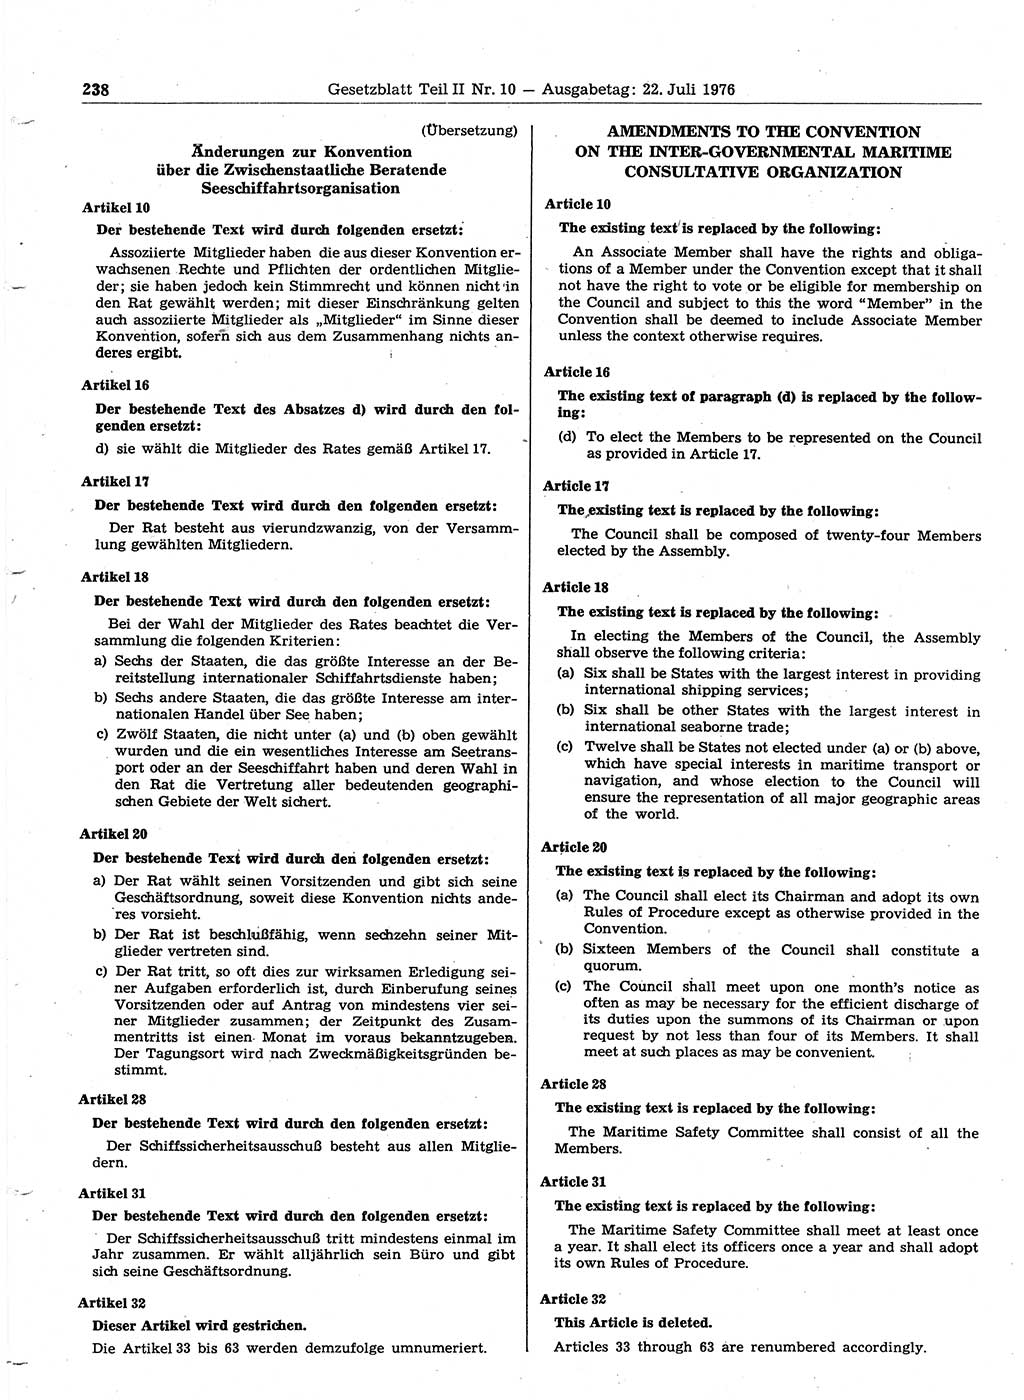 Gesetzblatt (GBl.) der Deutschen Demokratischen Republik (DDR) Teil ⅠⅠ 1976, Seite 238 (GBl. DDR ⅠⅠ 1976, S. 238)